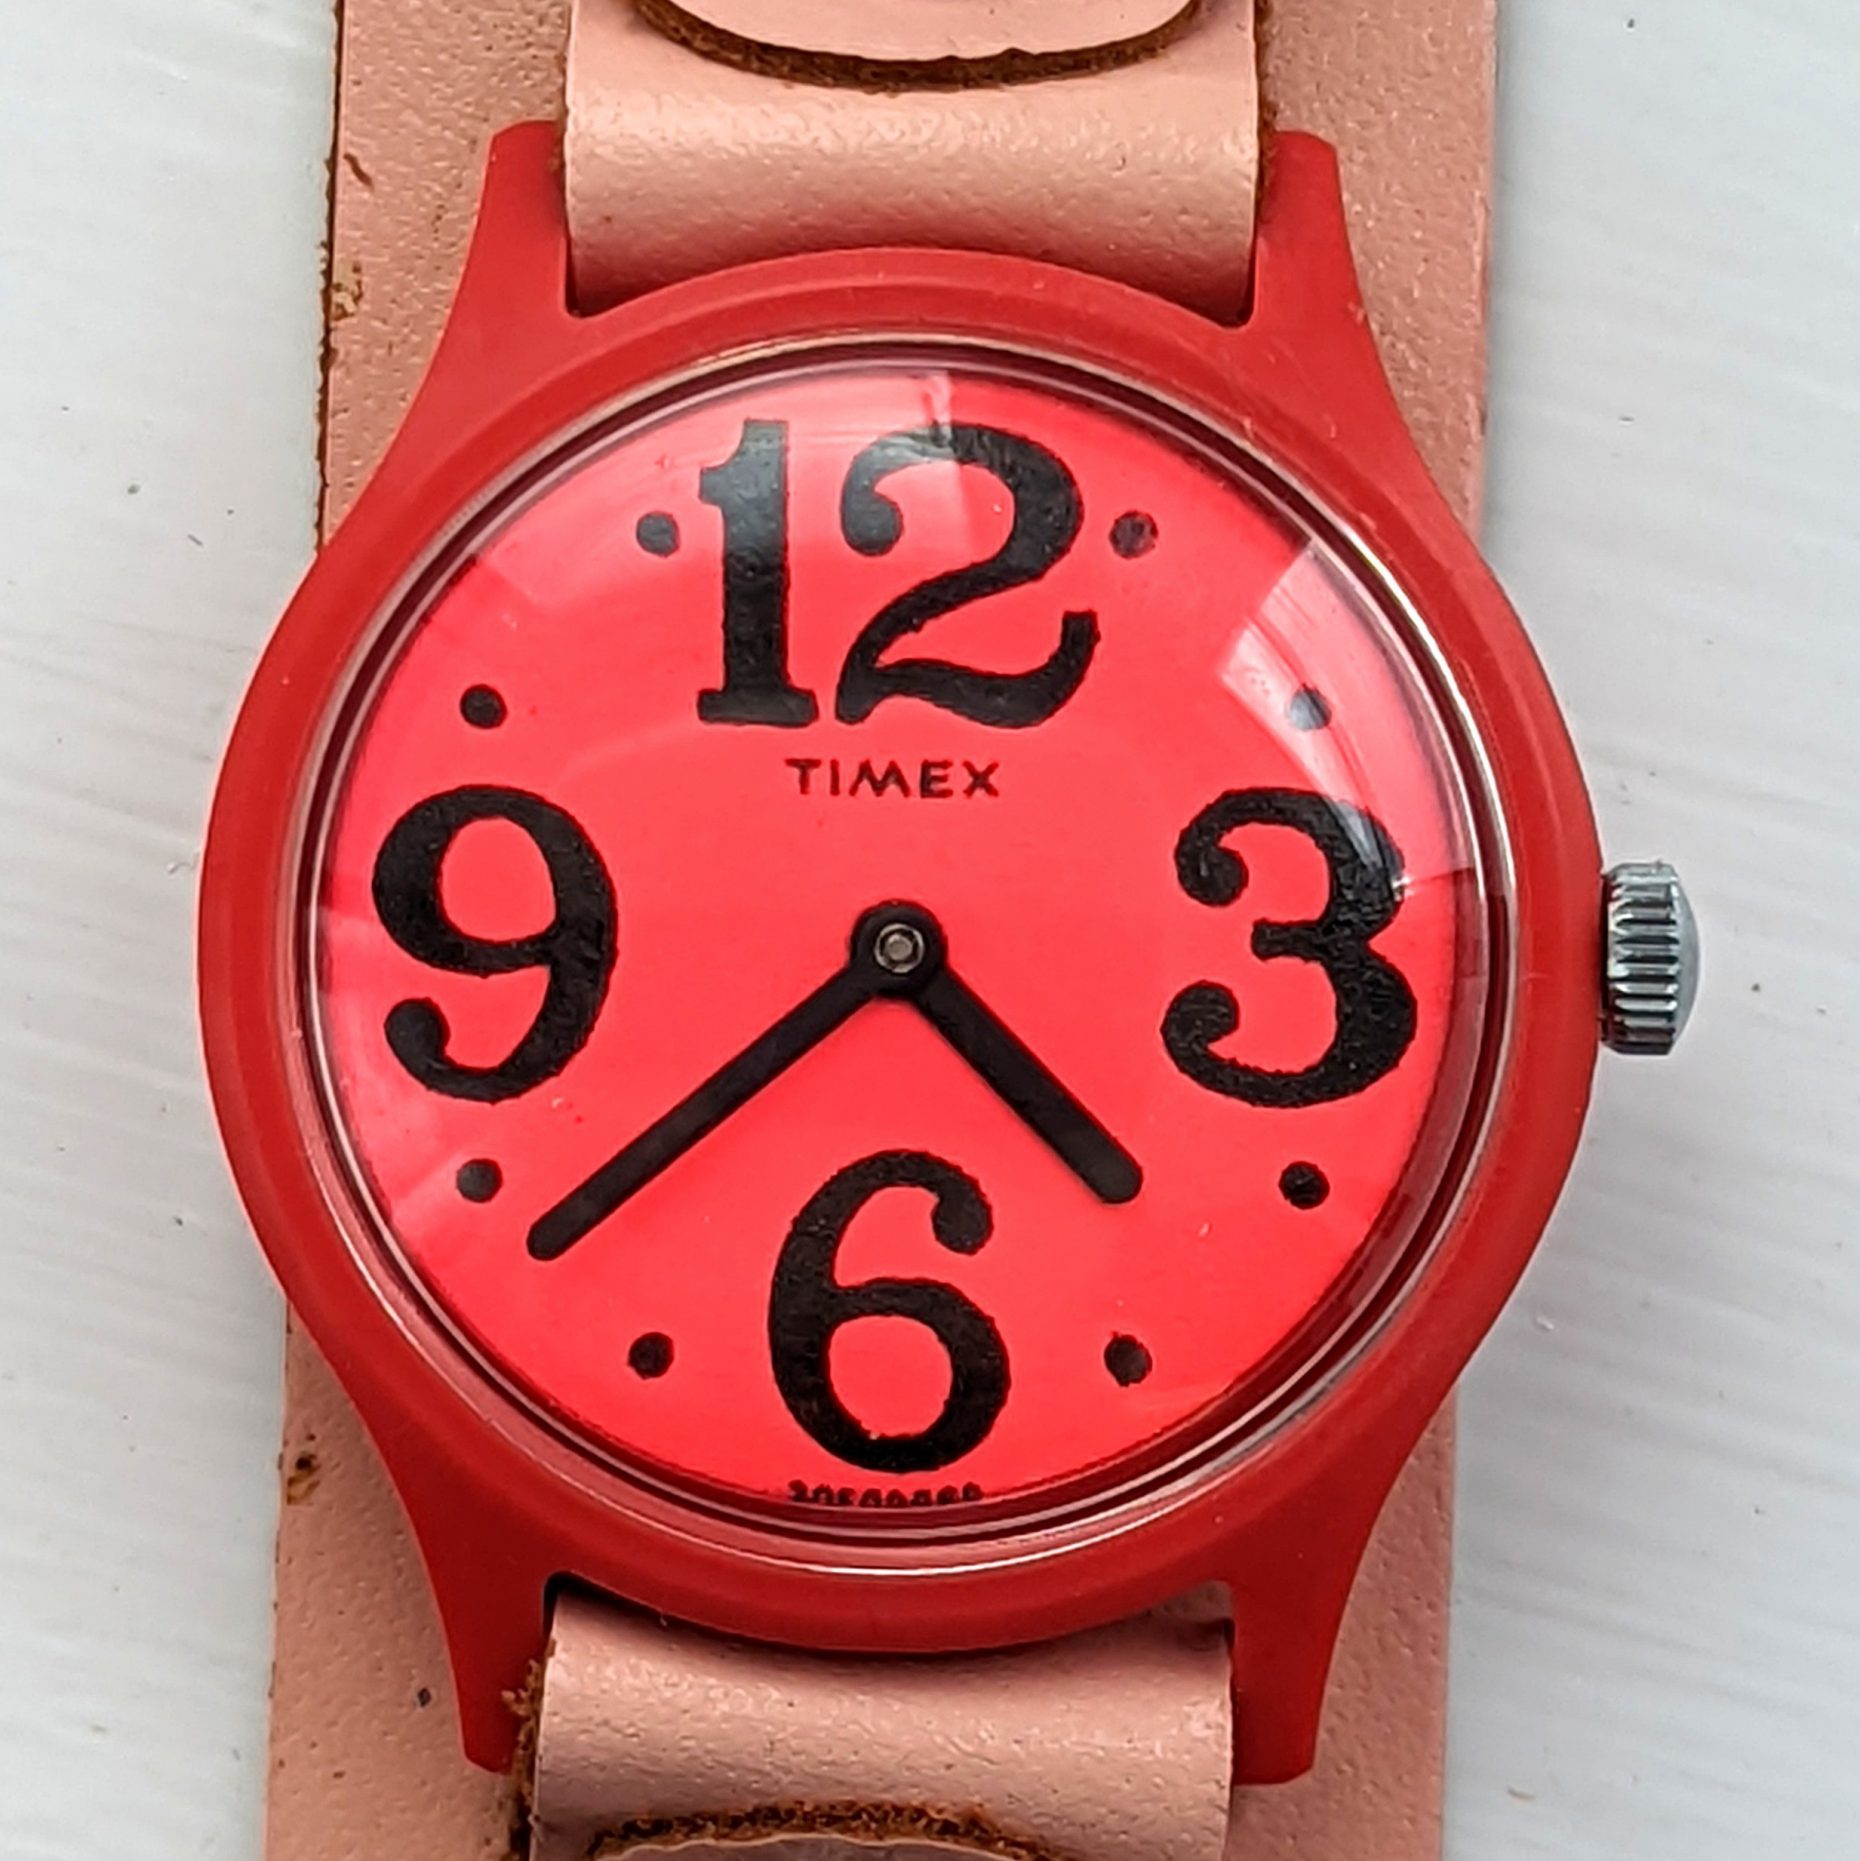 Timex Pink Fun Timer 3050 2468 [1968]